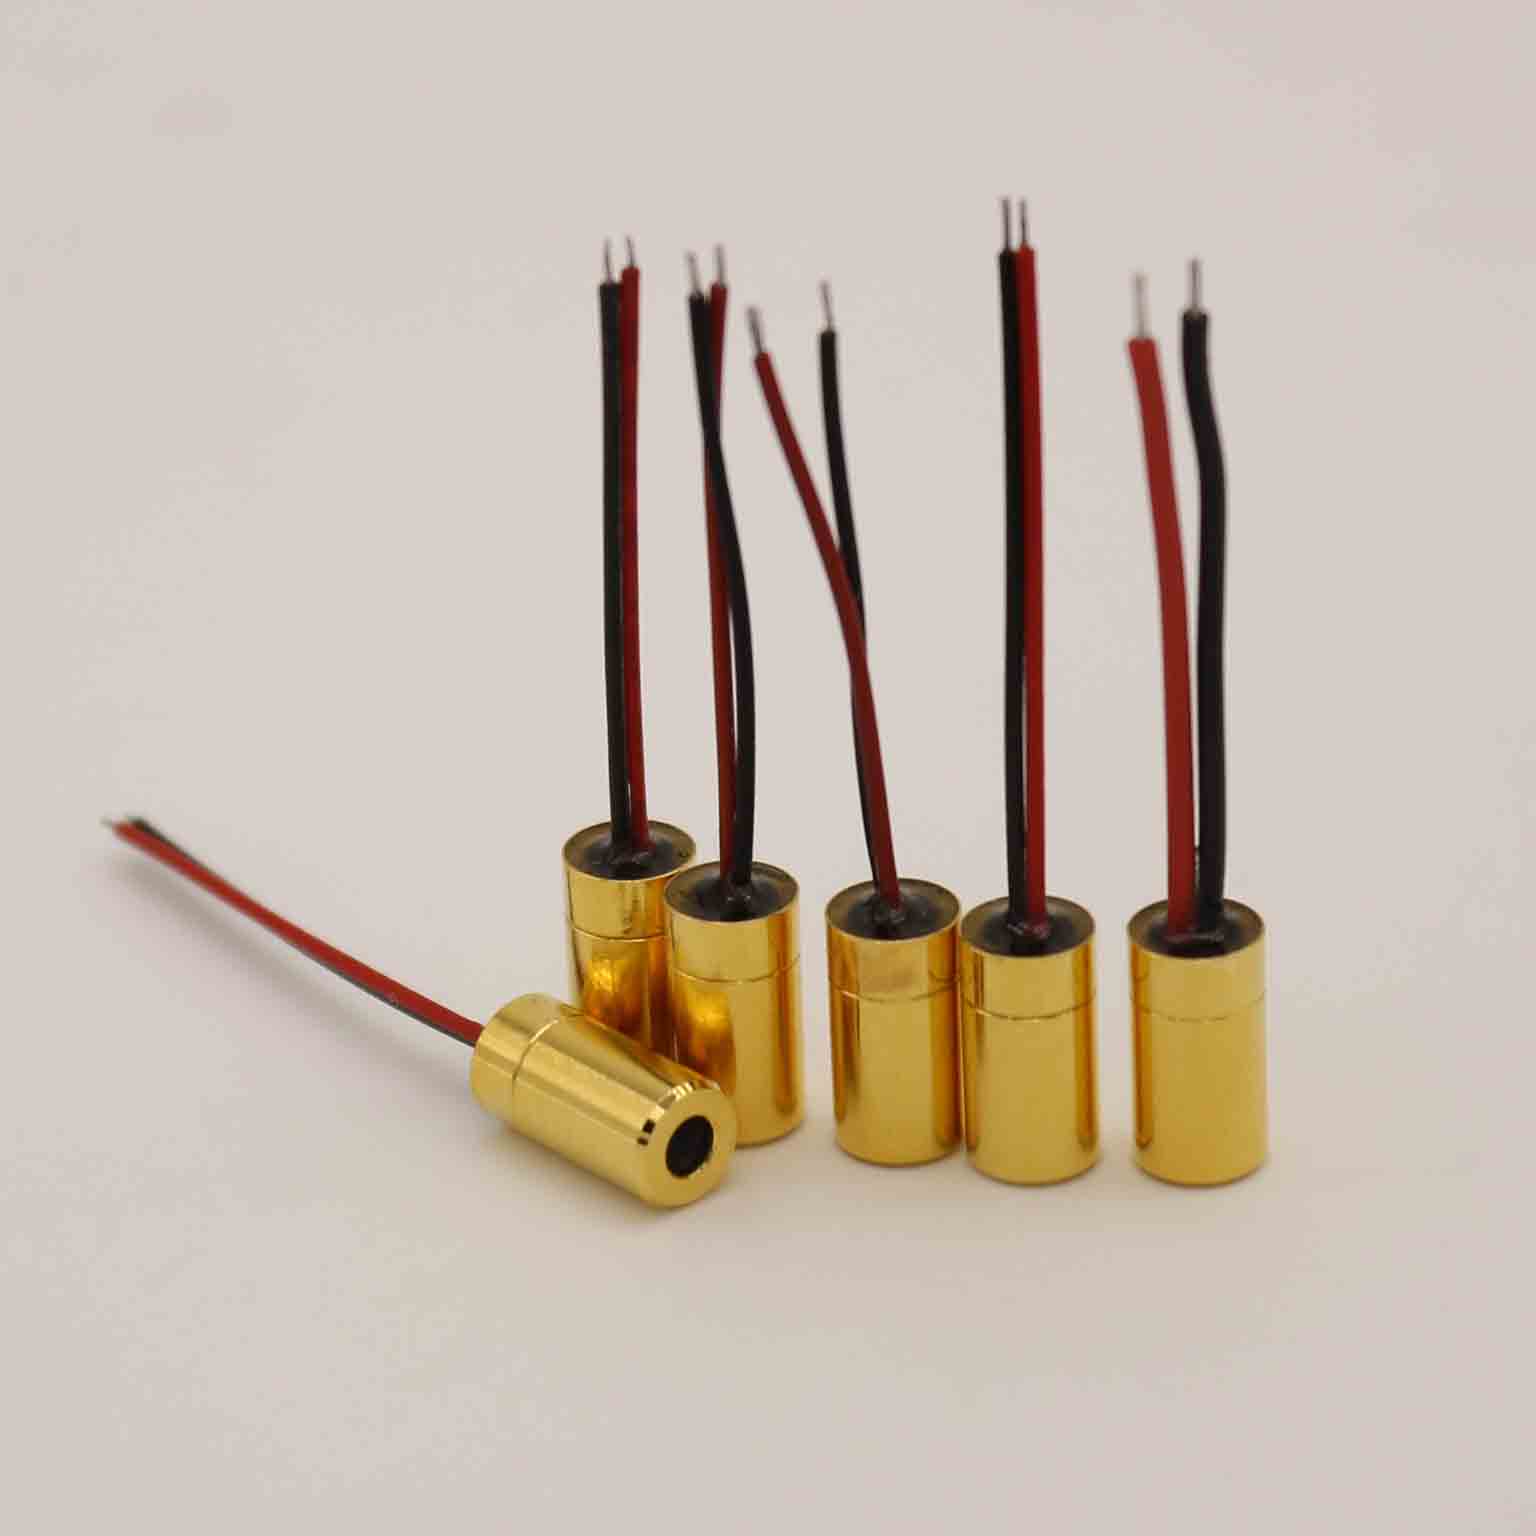 小さいレーザー工具のための低電力赤色のレーザーダイオードモジュール650nm 5MWクラスIIIAレーザーモジュール